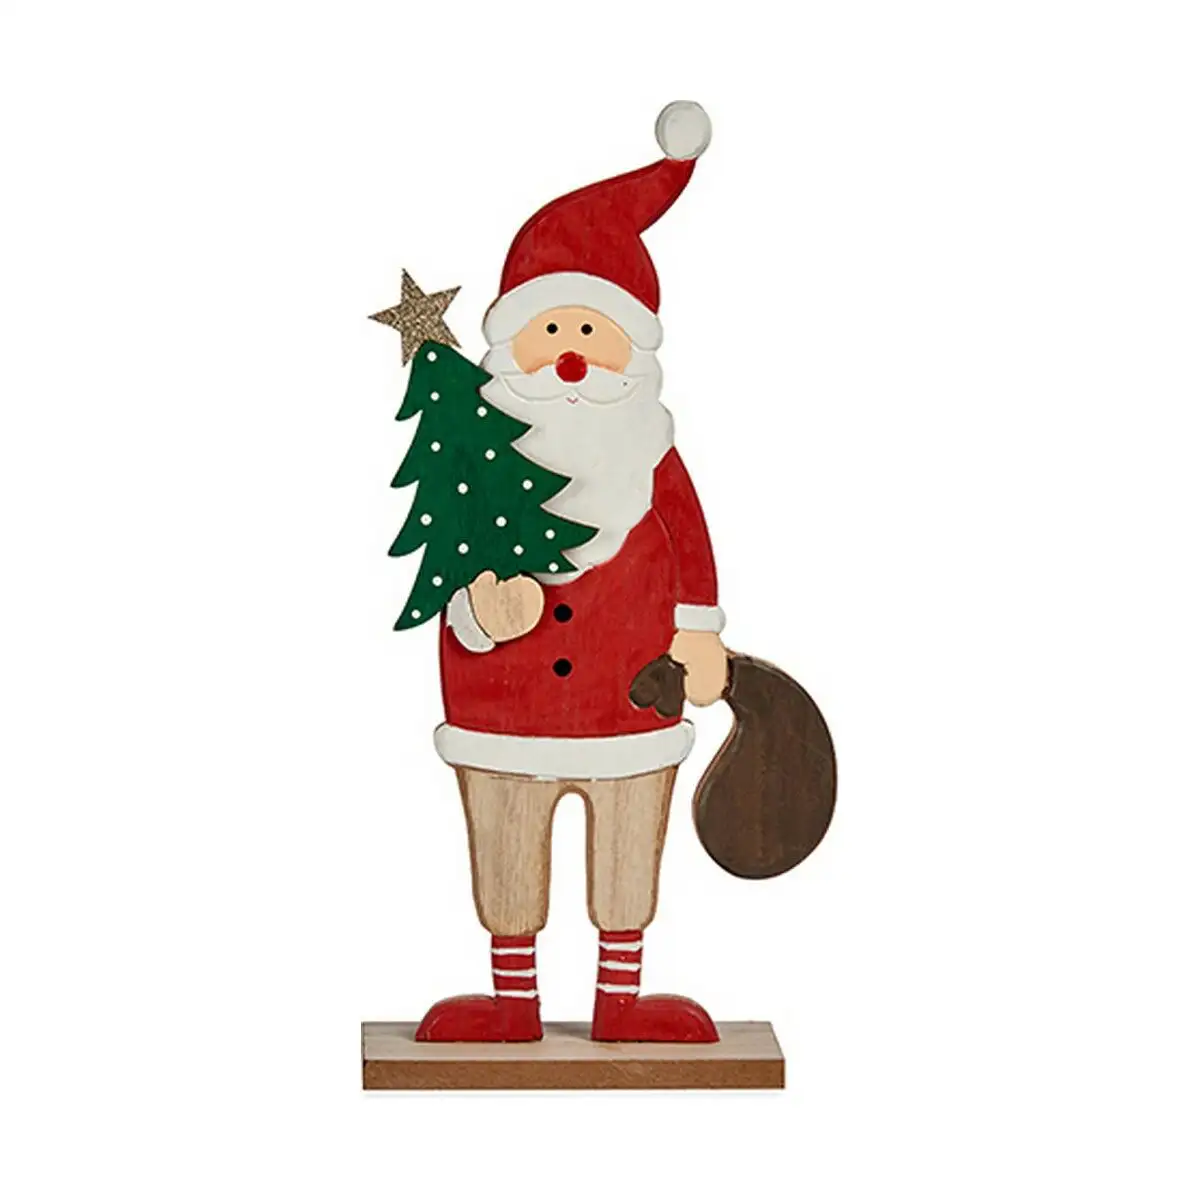 Figurine decorative pere noel 5 x 30 x 15 cm rouge bois marron blanc vert_2306. DIAYTAR SENEGAL - L'Odyssée du Shopping à Votre Portée. Parcourez notre boutique en ligne et partez à la découverte d'articles qui rendront chaque jour spécial.